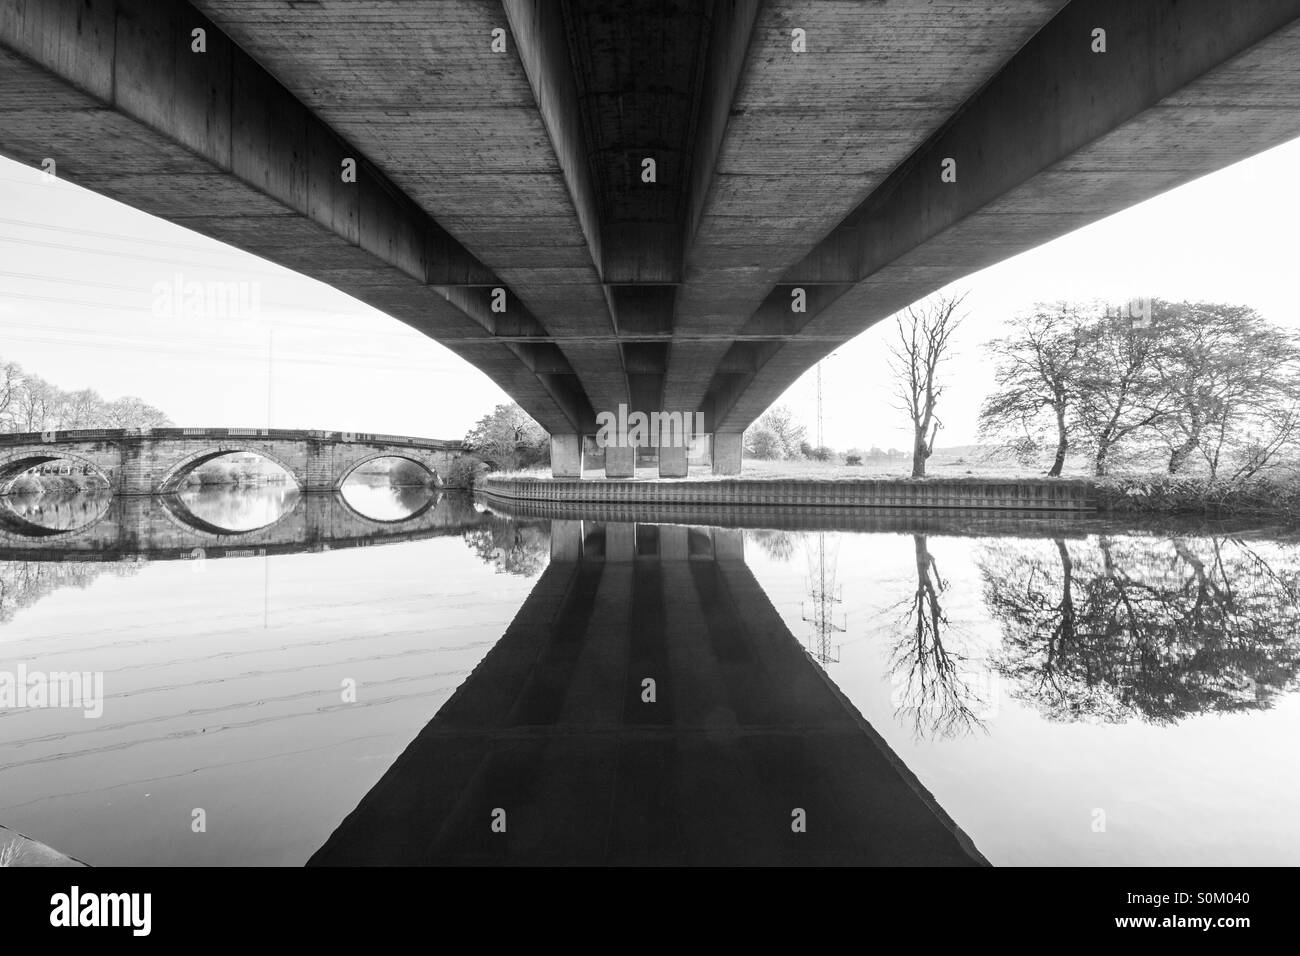 Immagine in bianco e nero della parte inferiore di un ponte di cemento con un vecchio ponte ulteriore discesa del fiume. Foto Stock